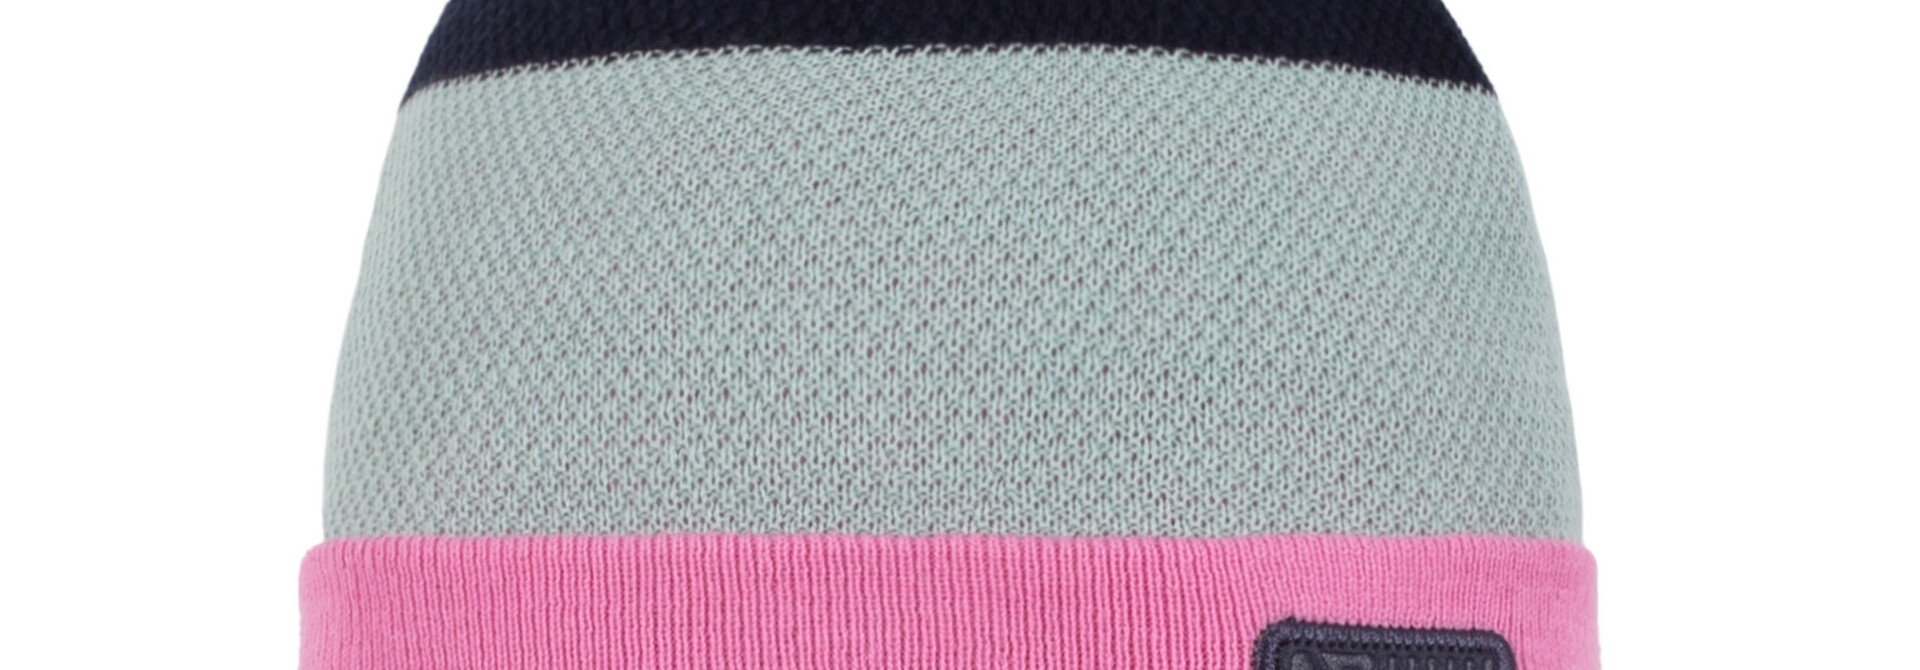 Tuque en tricot - JULIETTE